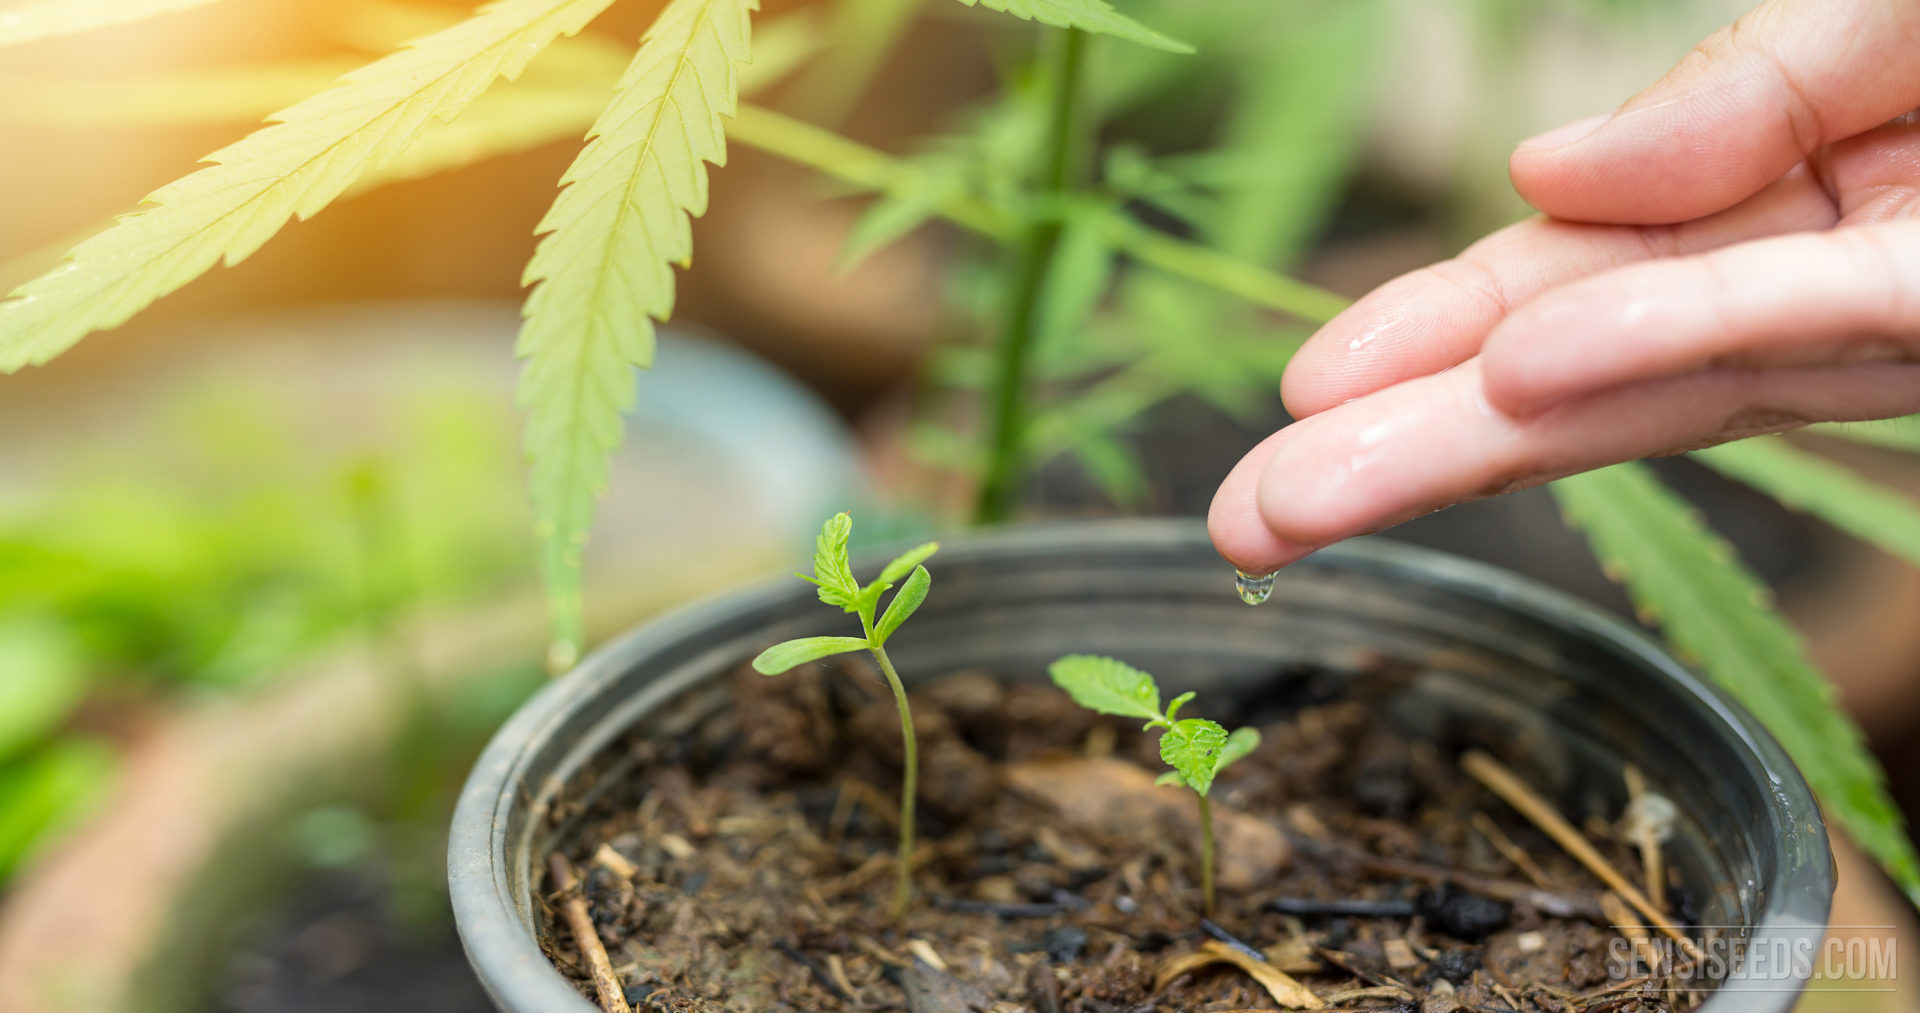 Удобрения для того чтобы вырастить марихуану ася тургенев конопля